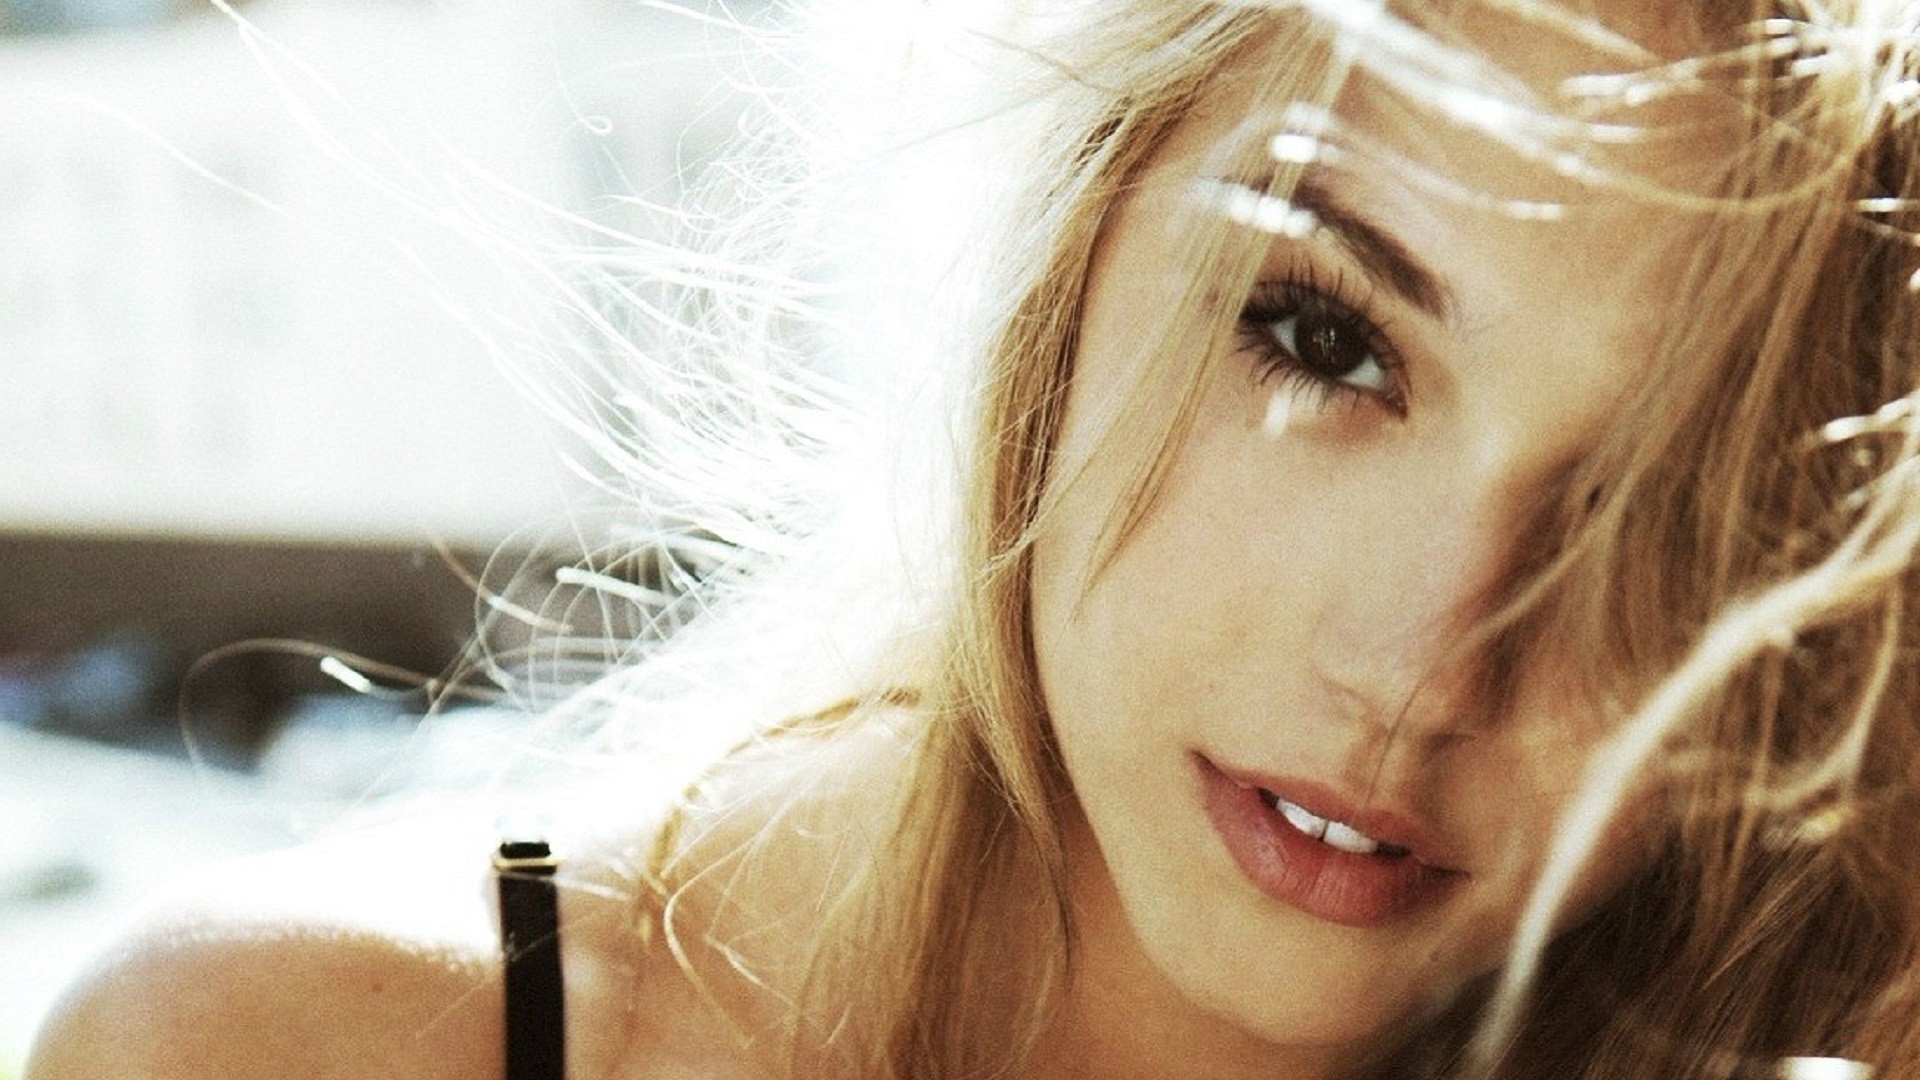 model, Blonde, Alexis Ren, Sunlight, Face, Closeup Wallpaper